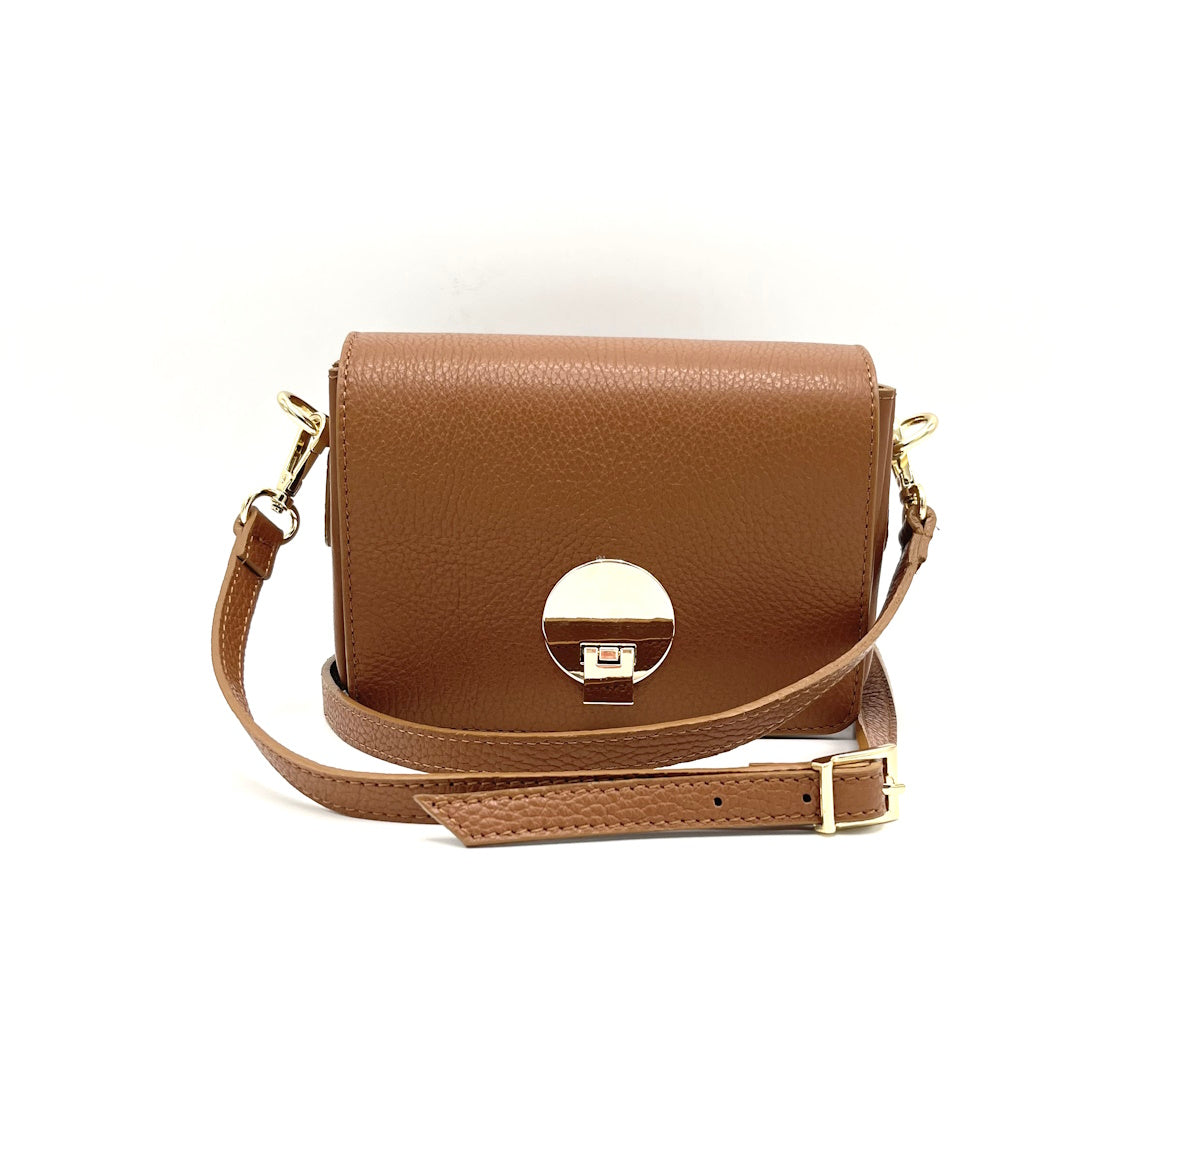 Genuine Leather Shoulder Bag / Borsa a Spalla in Vera Pelle - Line YOU - AURORA